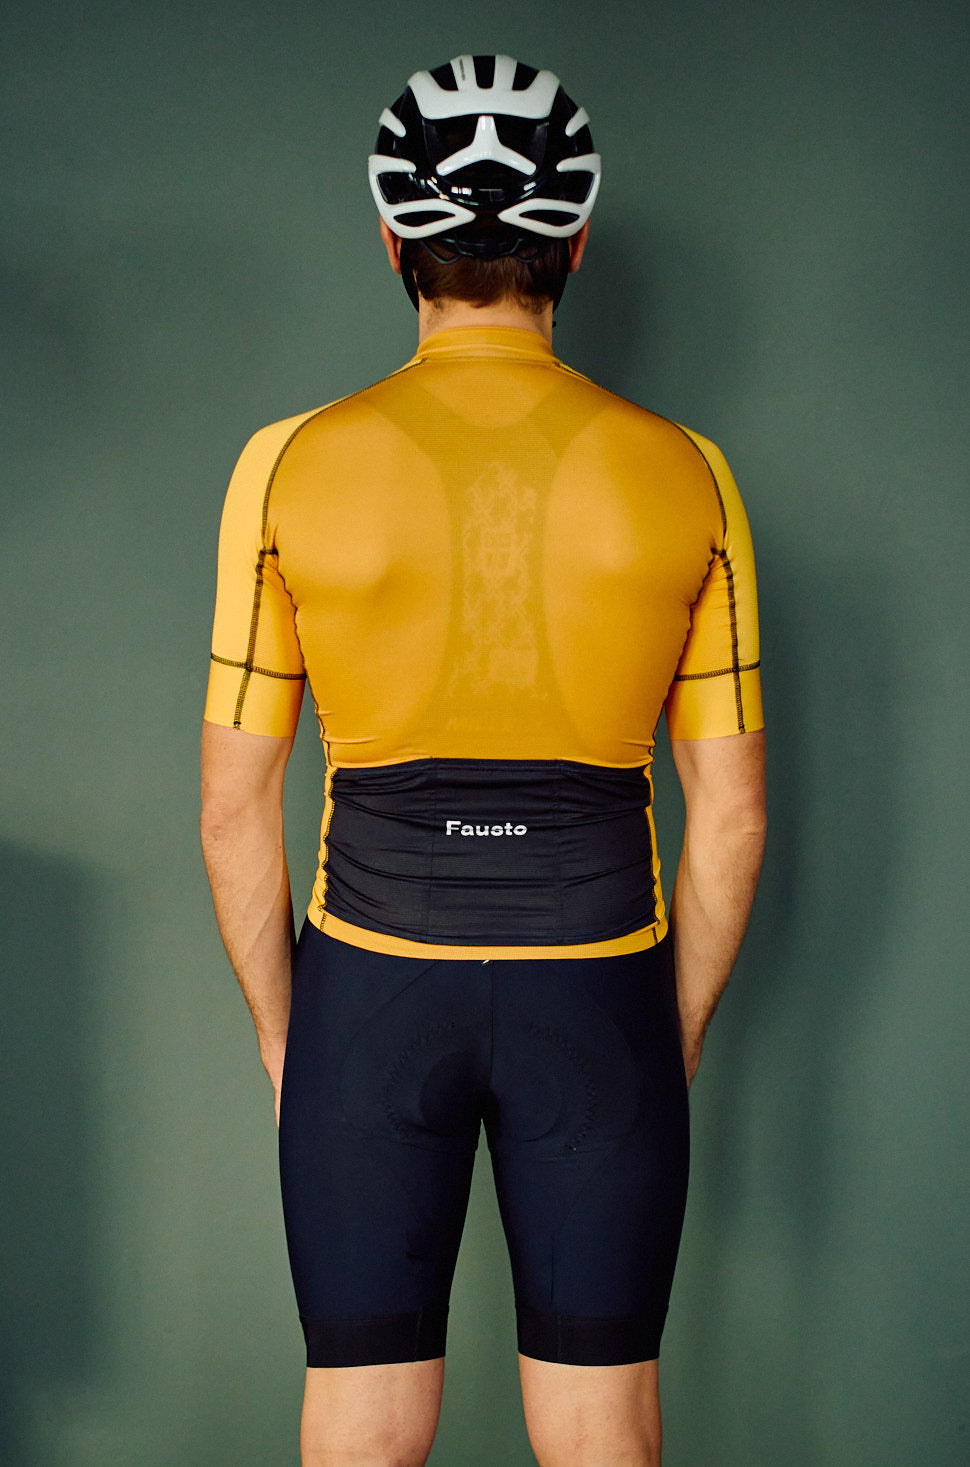 Shades - Men's Short Sleeve Cycling Shirt - Yellow